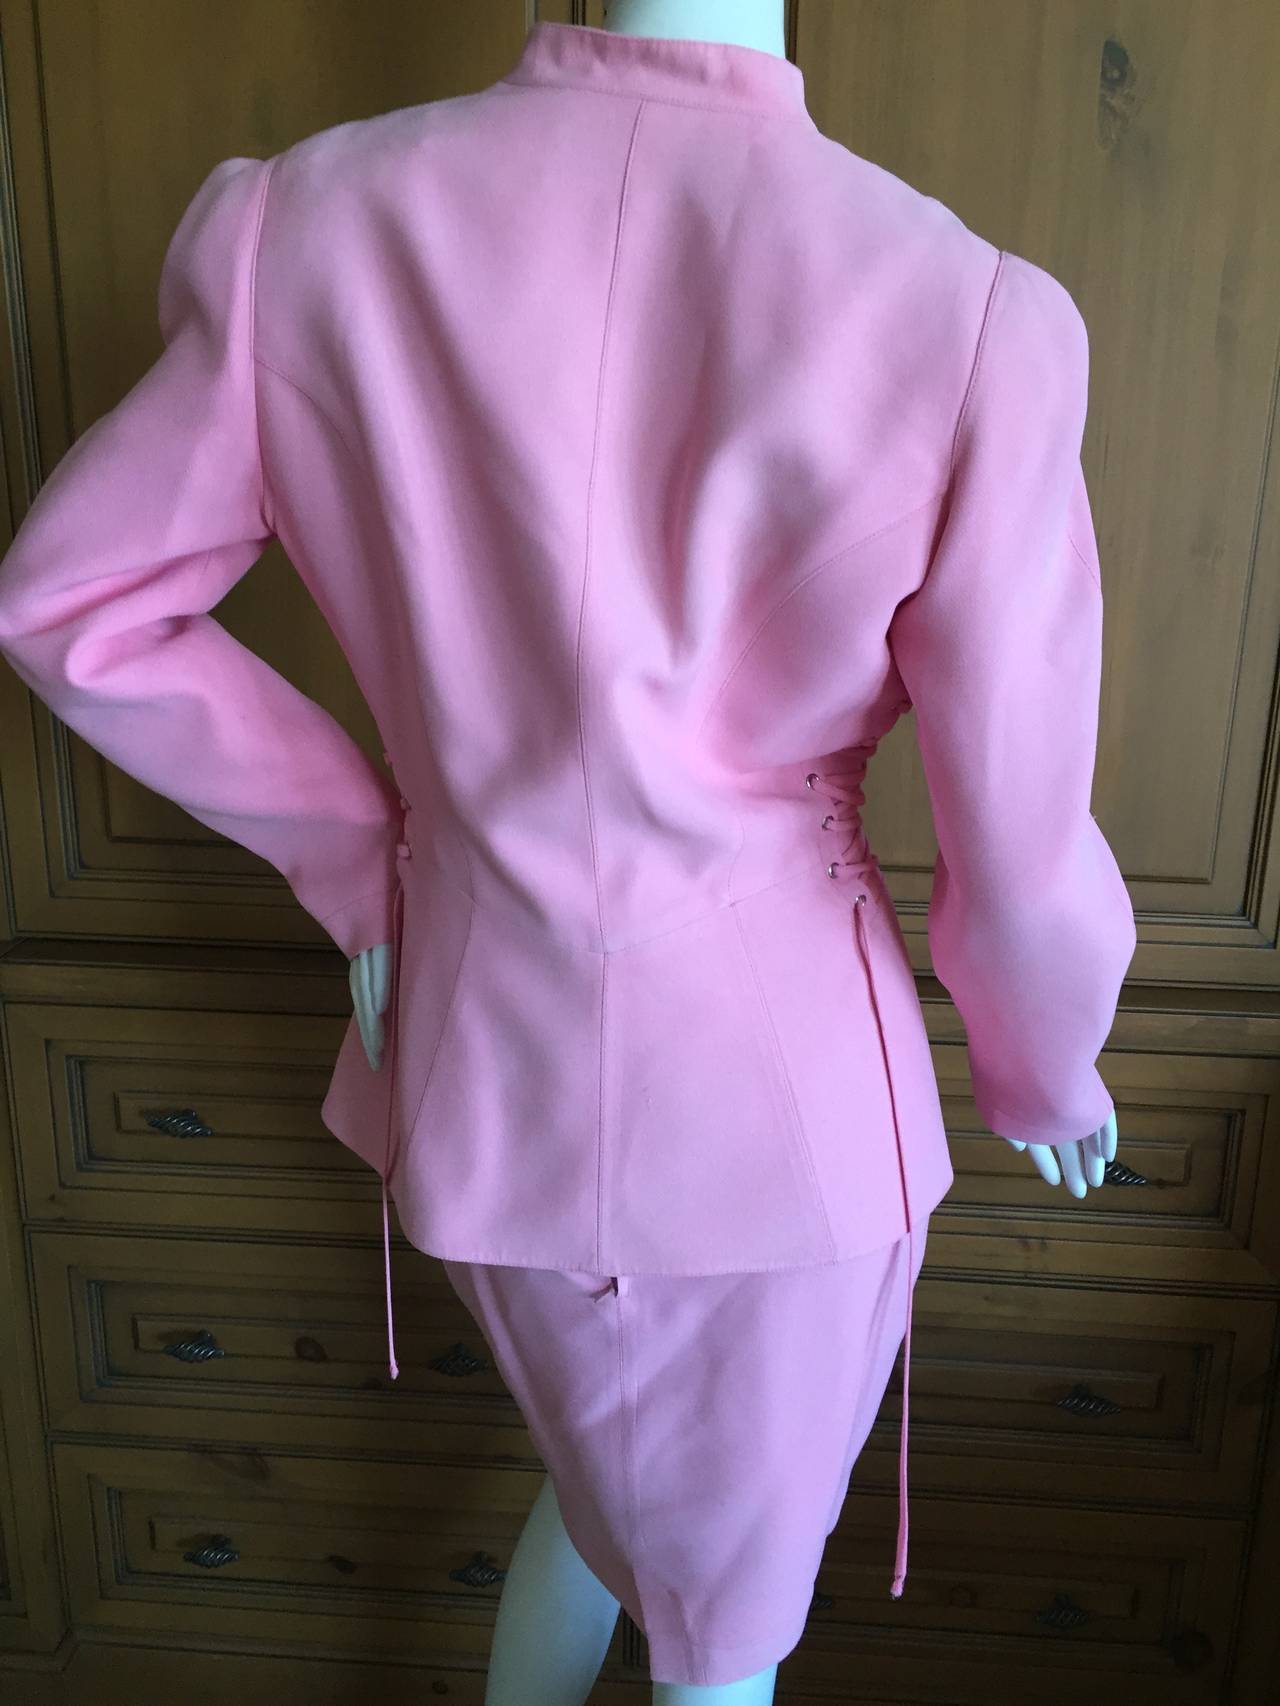 Thierry Mugler Vintage Pink Suit w Corset Lace Details 2